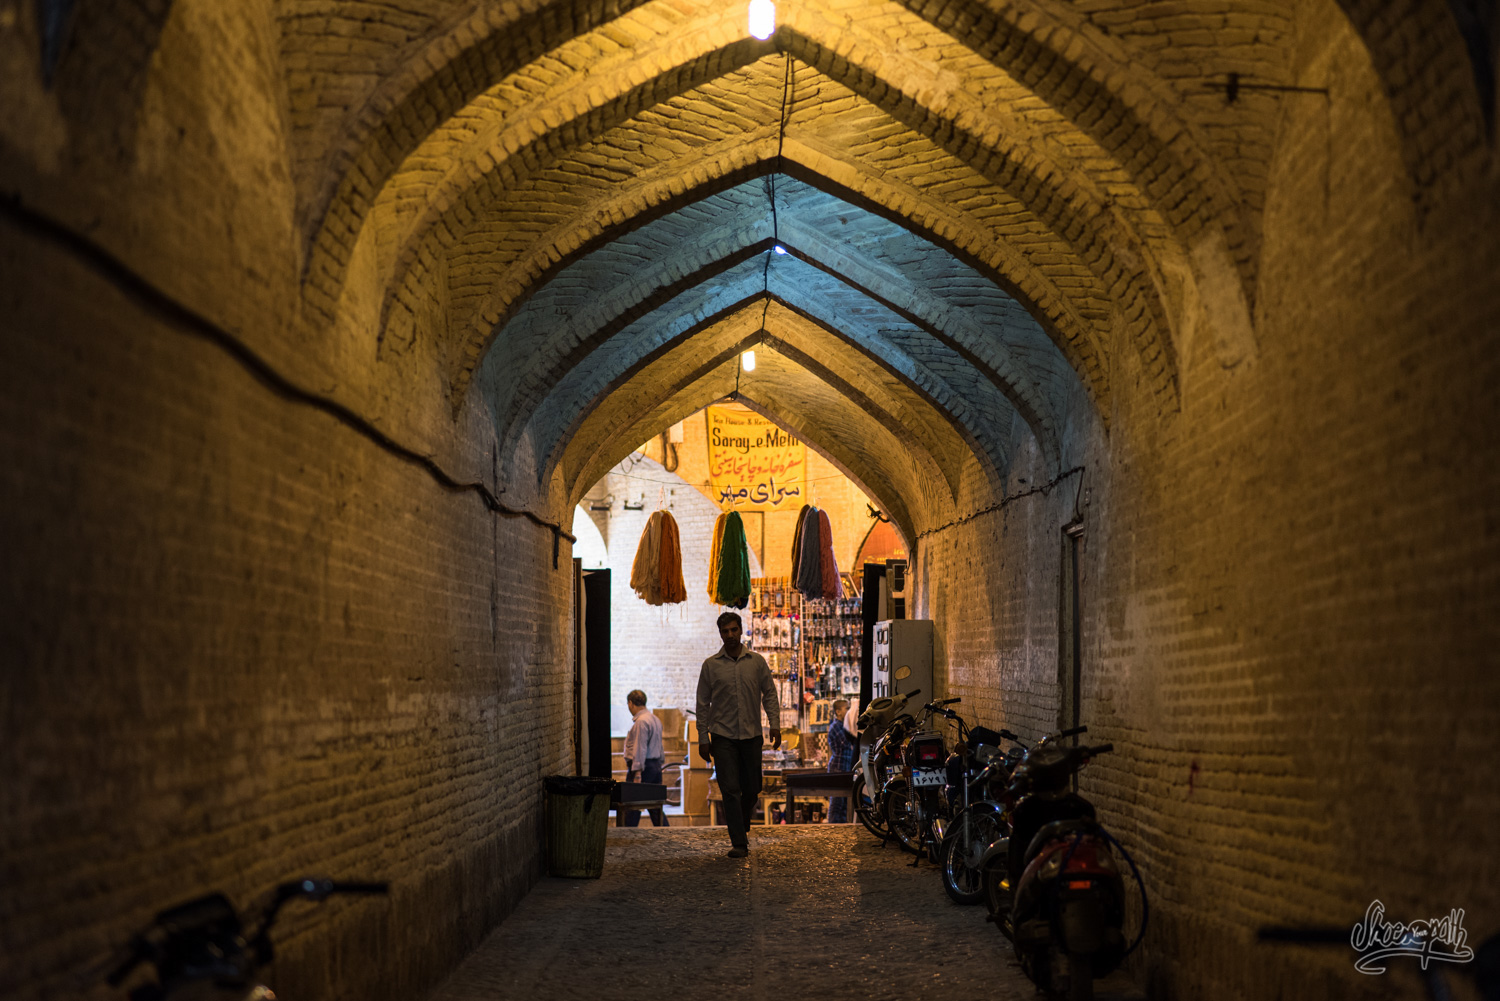 Dans le bazar de Shiraz